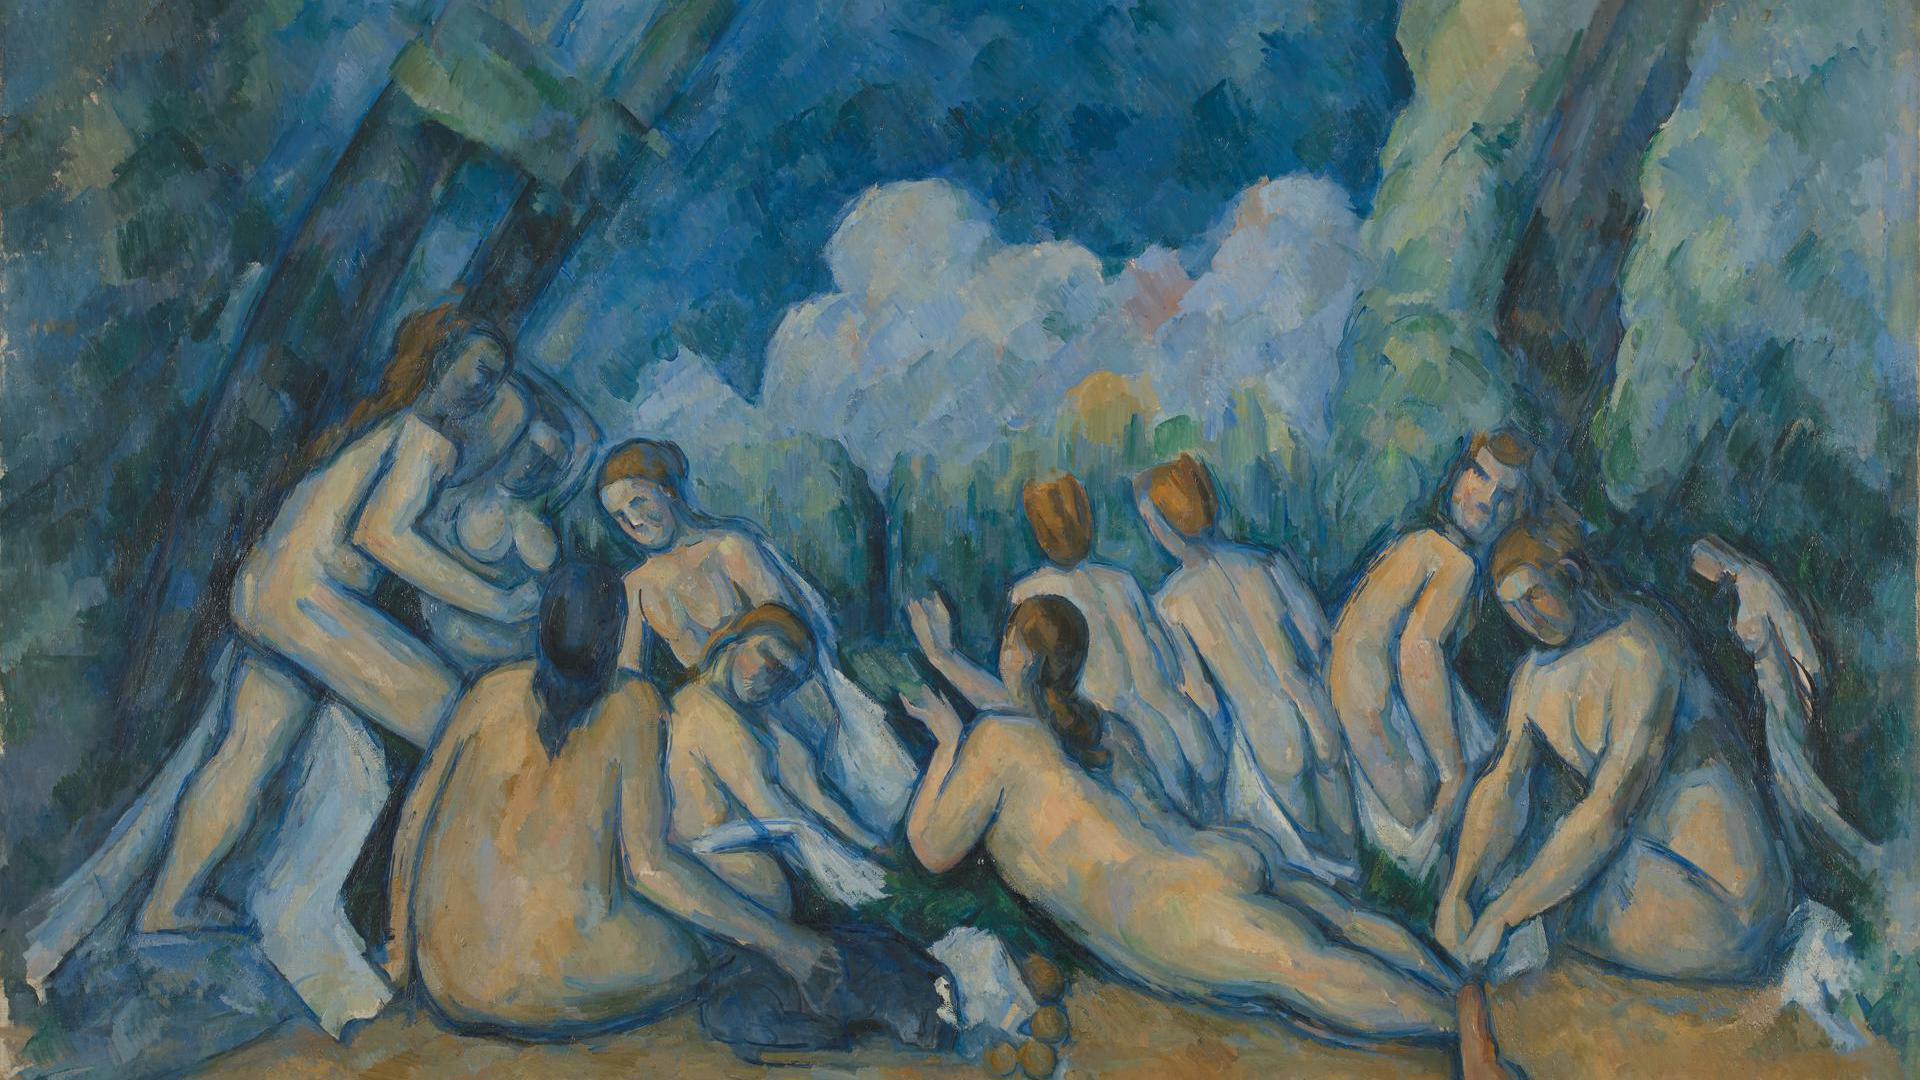 Bathers (Les Grandes Baigneuses) by Paul Cézanne